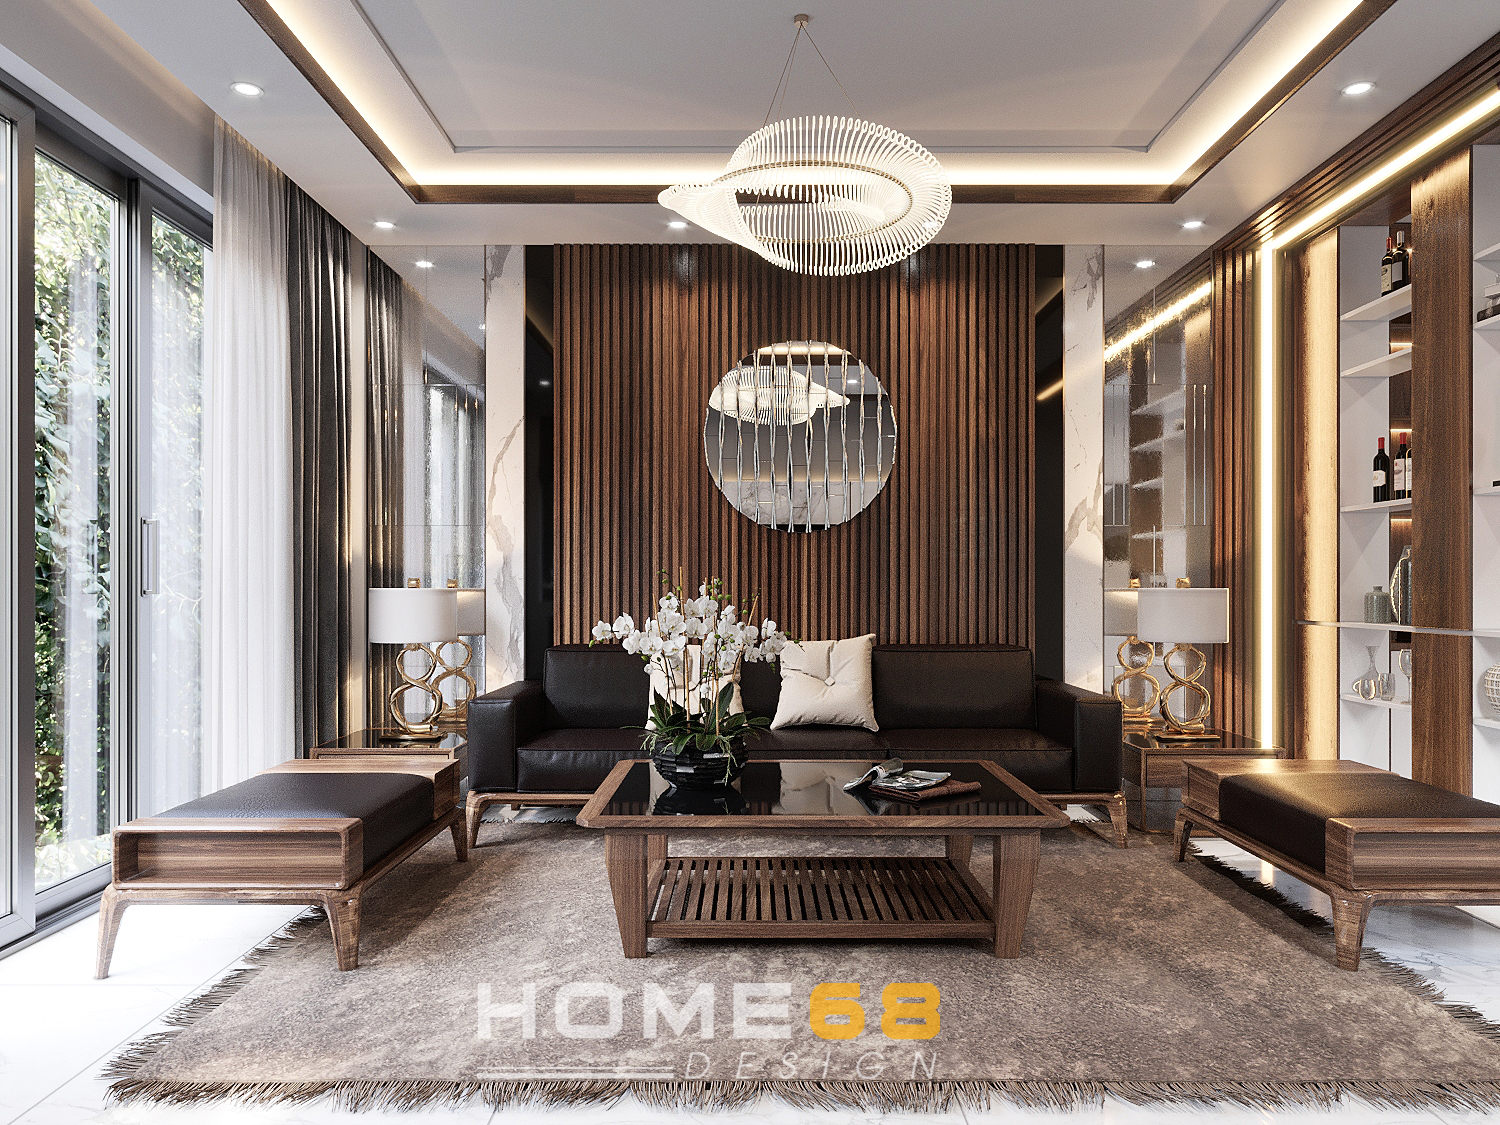 Thiết kế nội thất phòng khách hiện đại: Thiết kế nội thất phòng khách hiện đại tạo nên không gian sống đẹp và sang trọng. Xem ảnh liên quan để nhận được những ý tưởng thiết kế phòng khách hiện đại tuyệt vời.